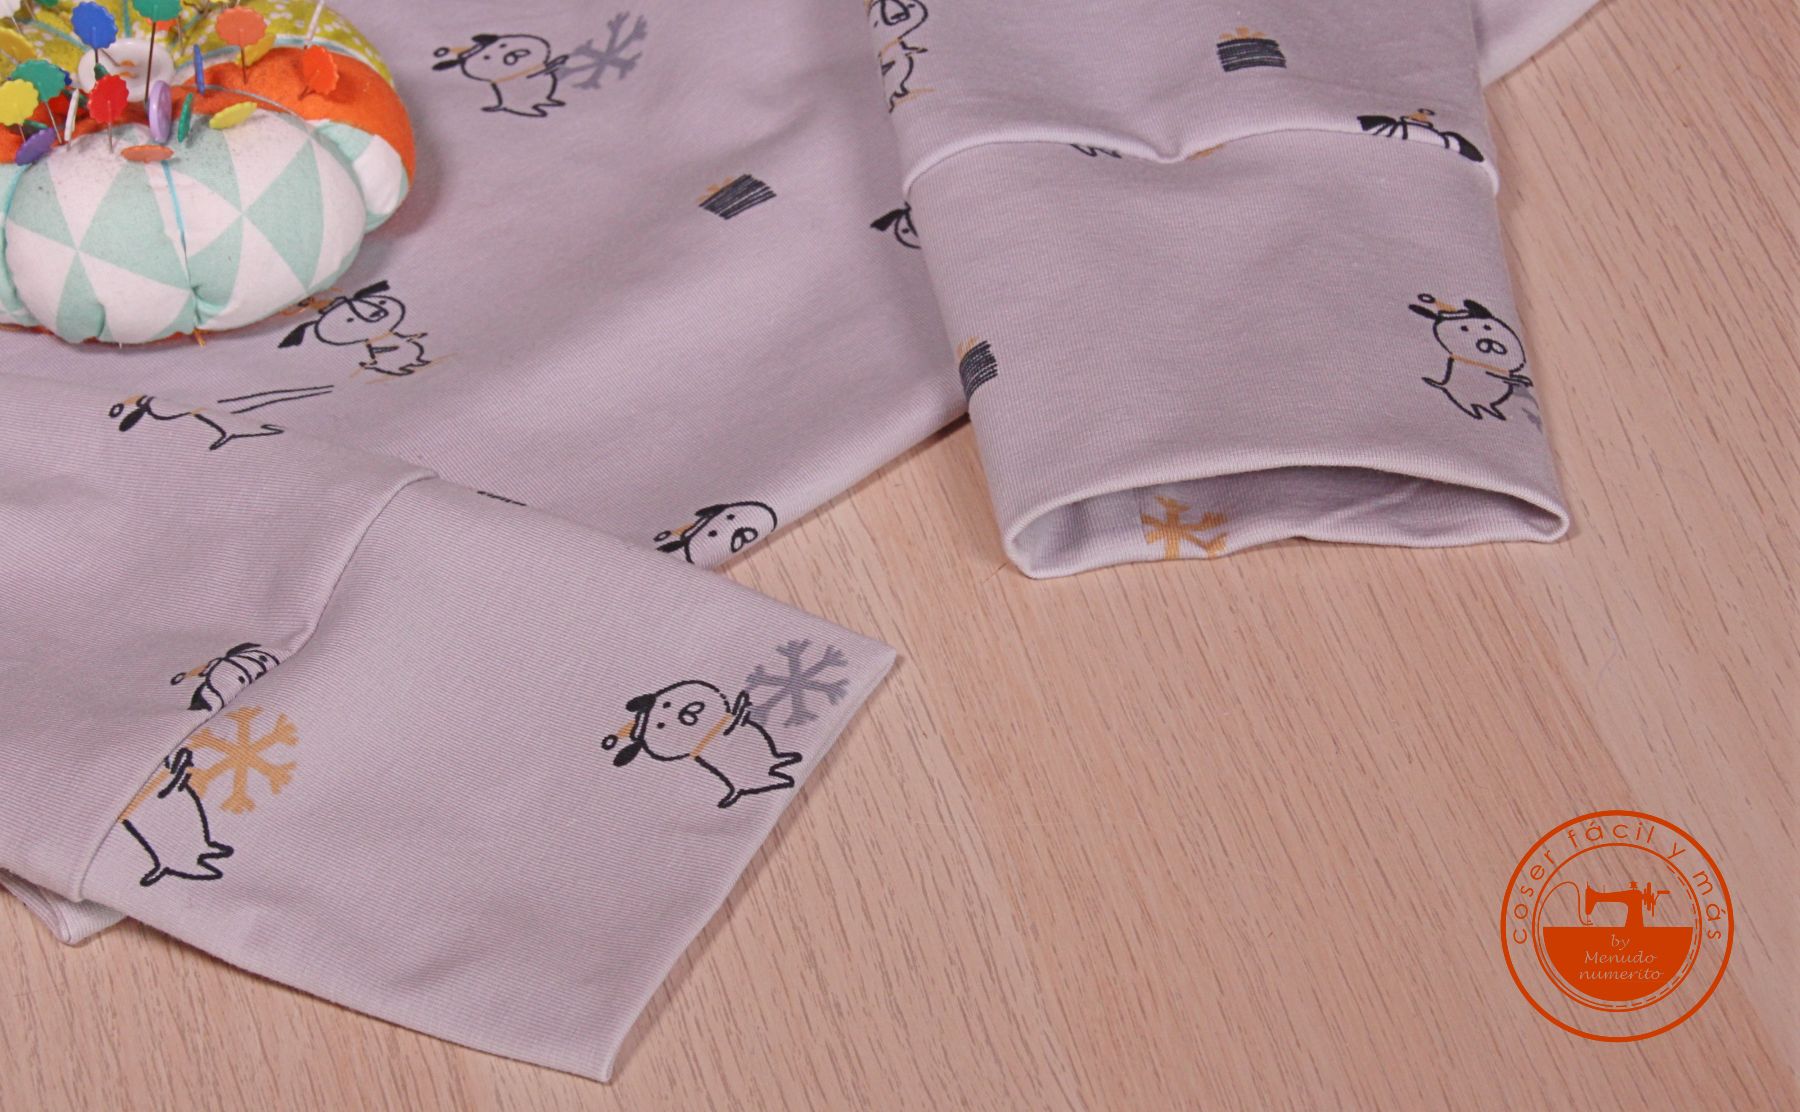 poner puños sudadera coser facil blogs de costura tutorial